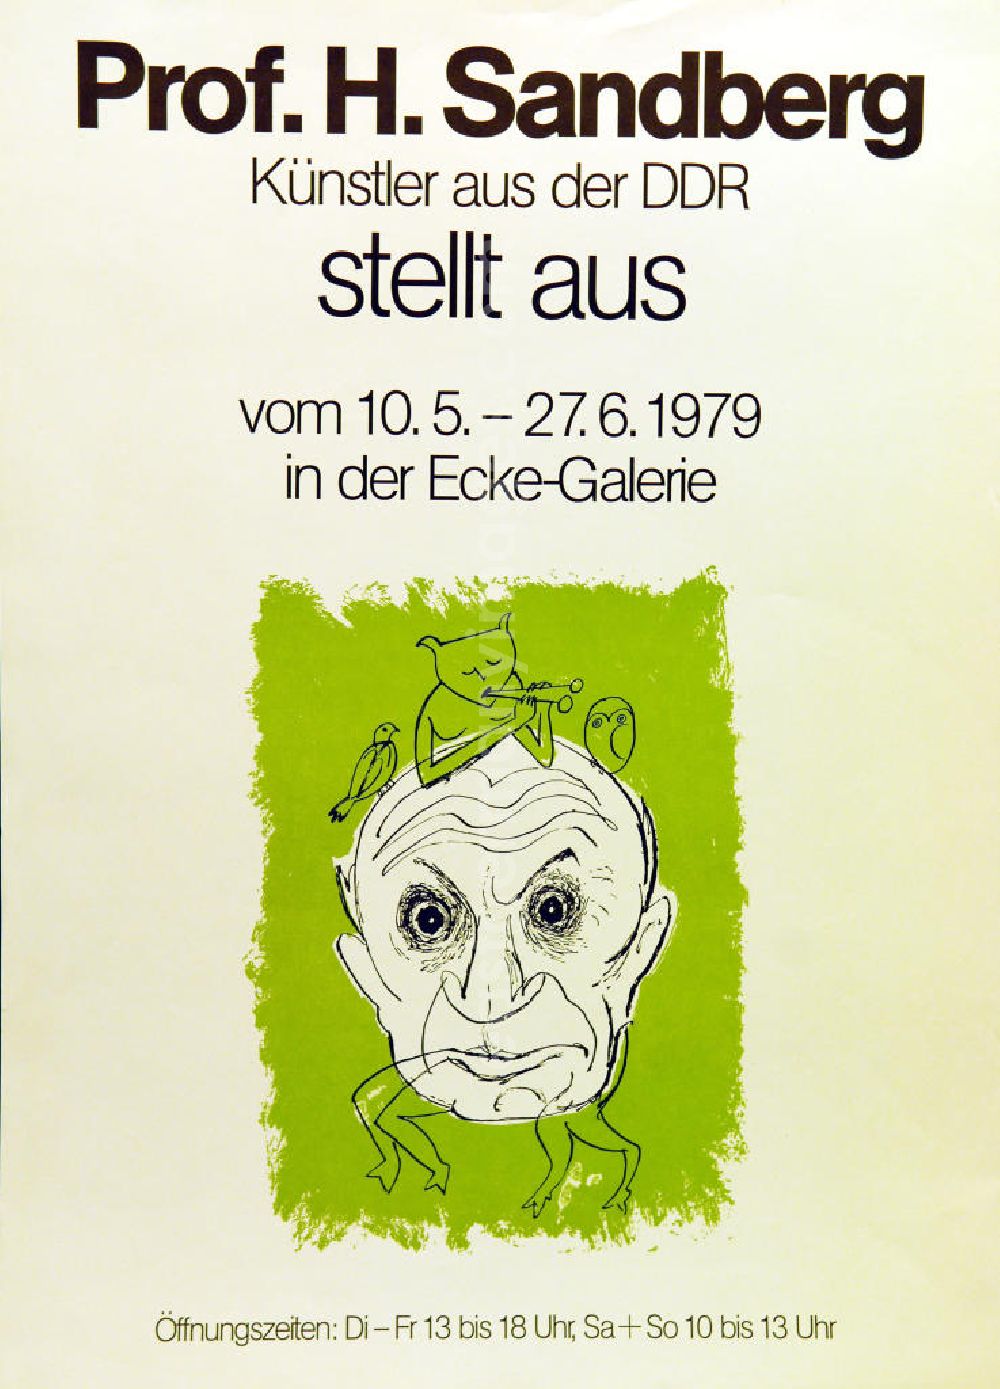 GDR picture archive: Berlin - Plakat der Ausstellung Prof. H. Sandberg, Künstler aus der DDR stellt aus vom 10.05.-27.